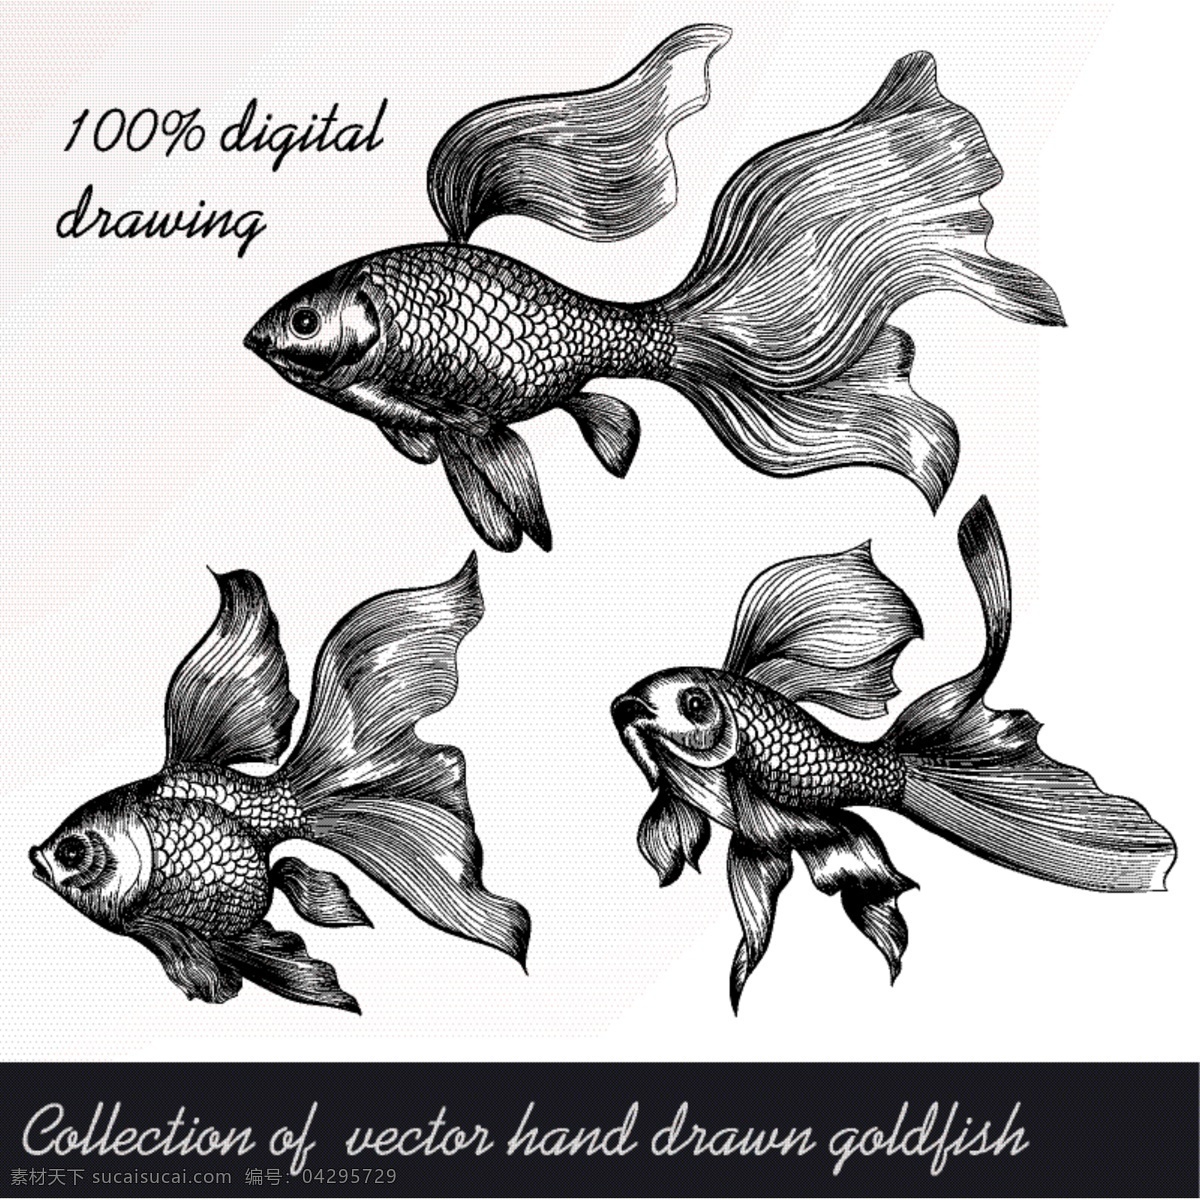 手绘金鱼集 一方面 海 鱼 动物 手绘 取材 收集 集 金鱼 海洋生物